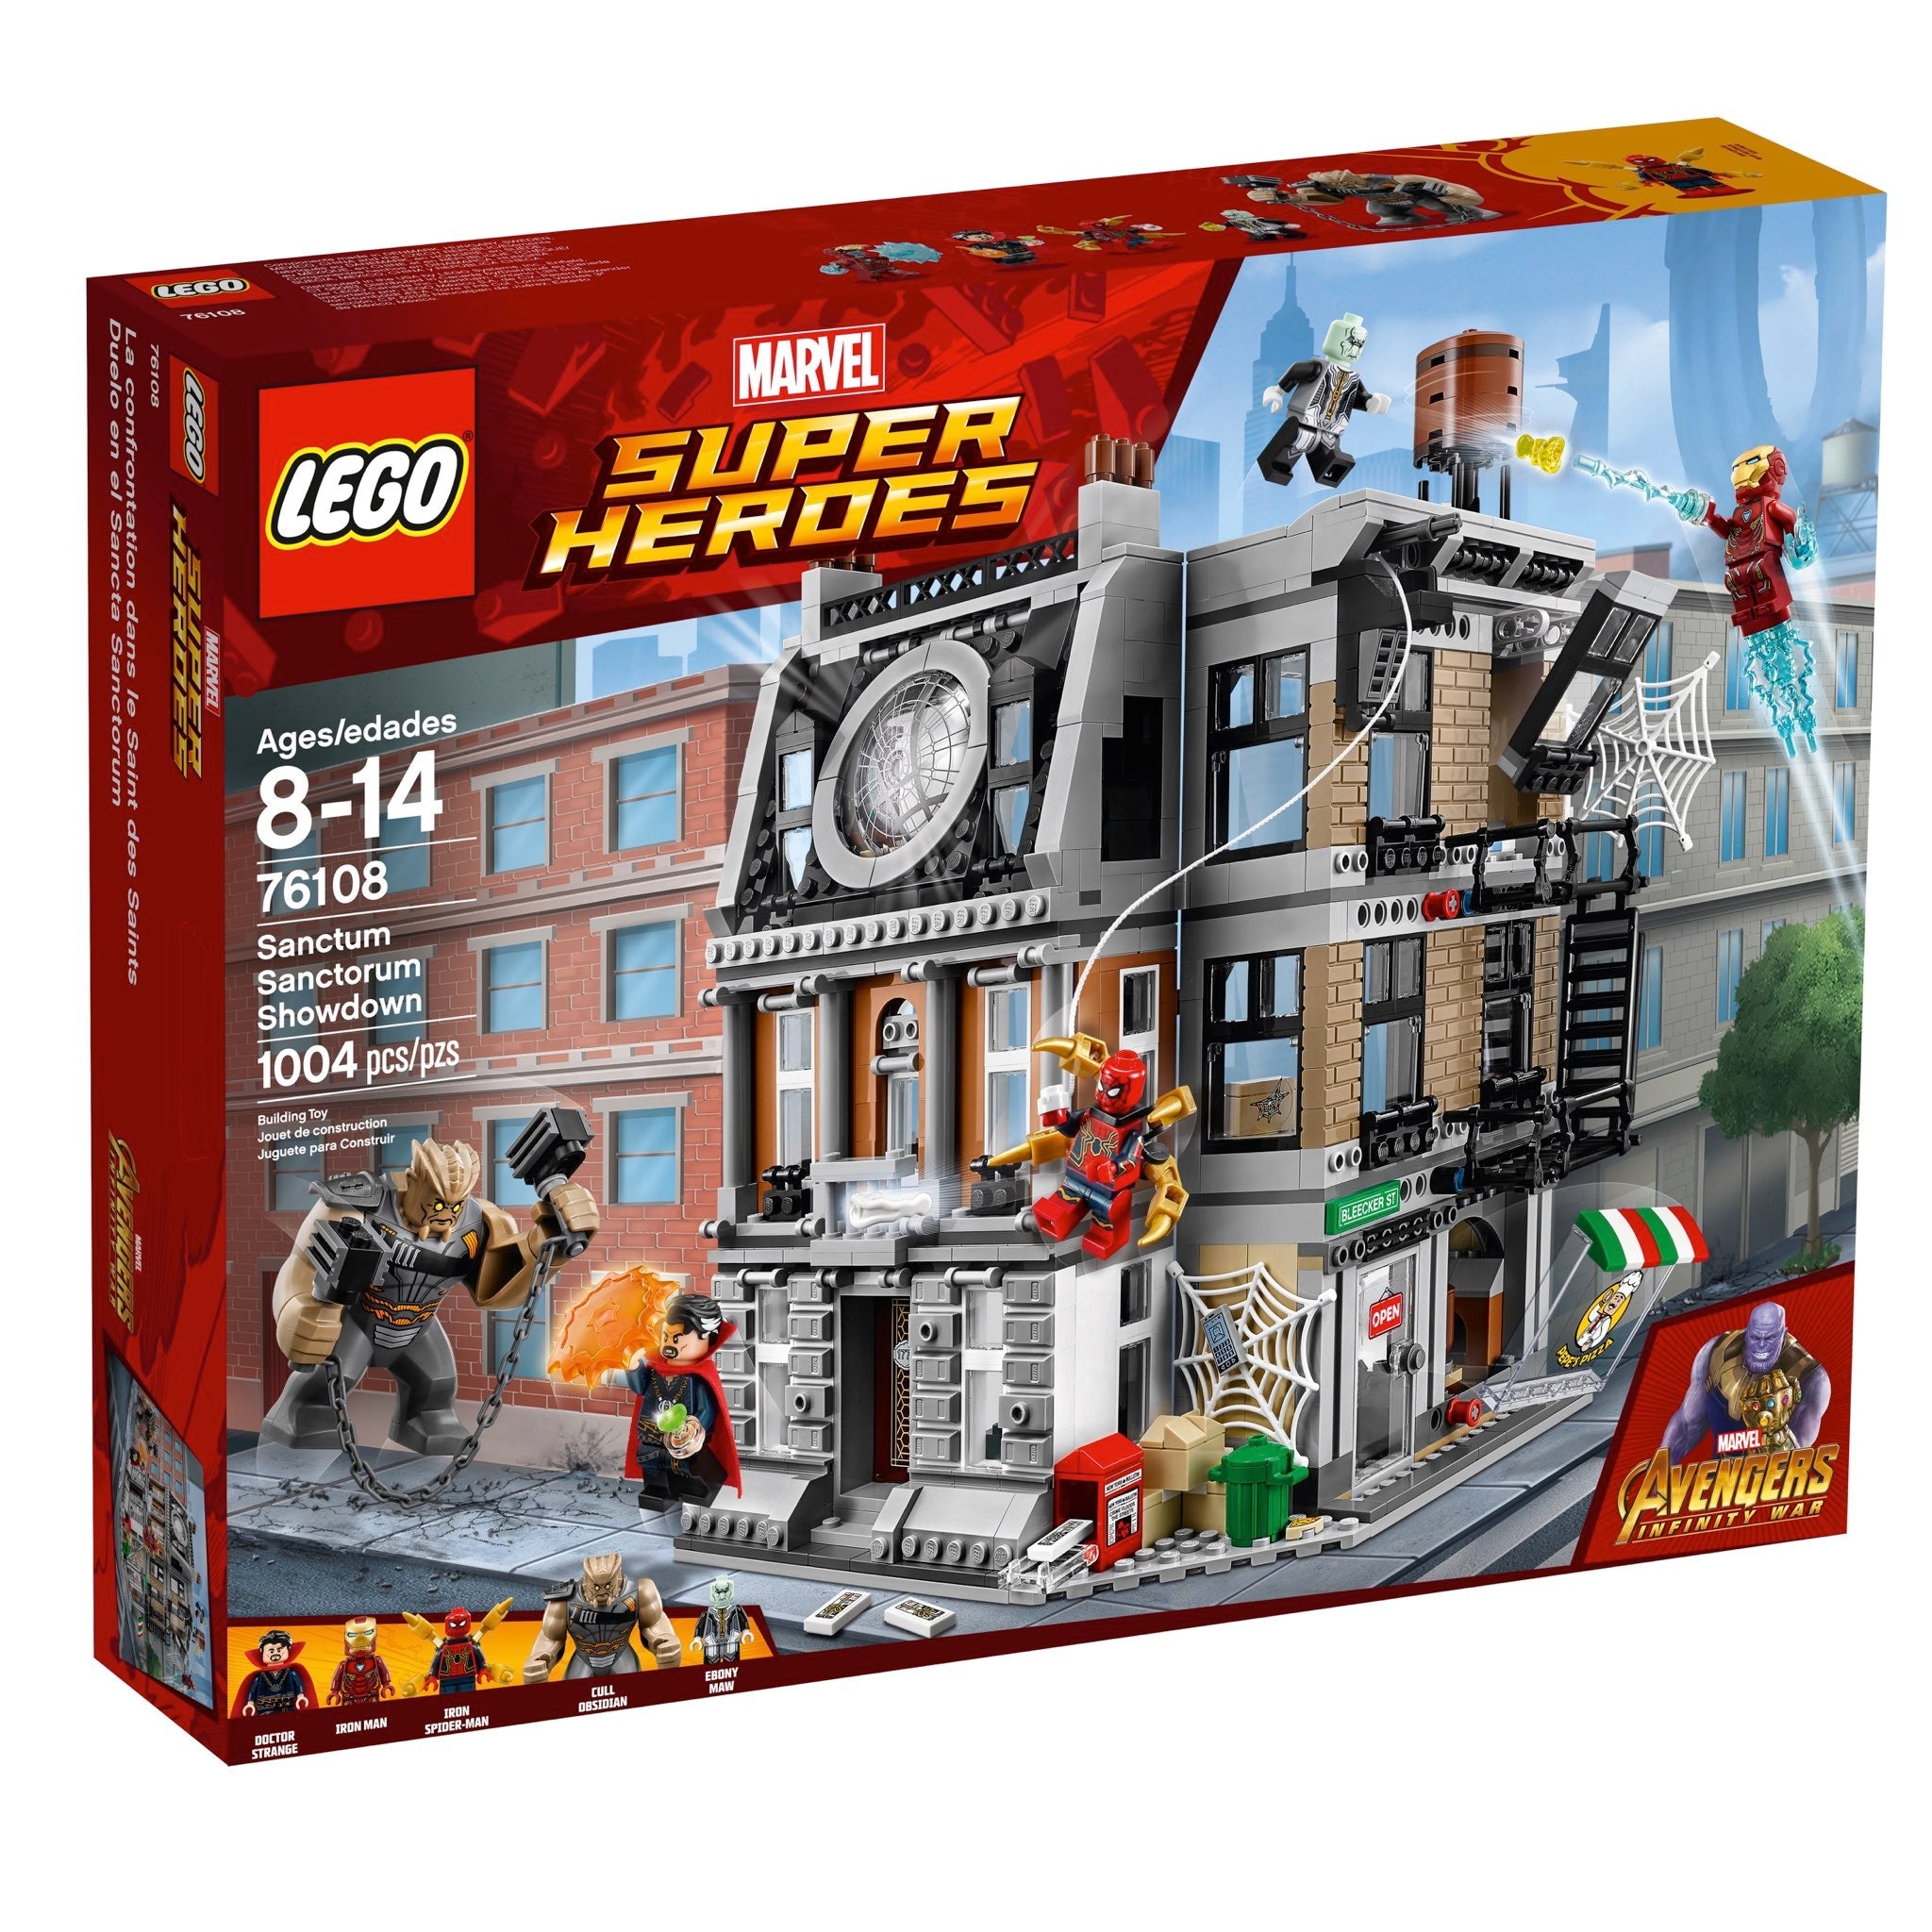 LEGO Marvel Super Heroes Avengers: Infinity War Sanctum Sanctorum Showdown (76108) - im GOLDSTIEN.SHOP verfügbar mit Gratisversand ab Schweizer Lager! (5702016110197)